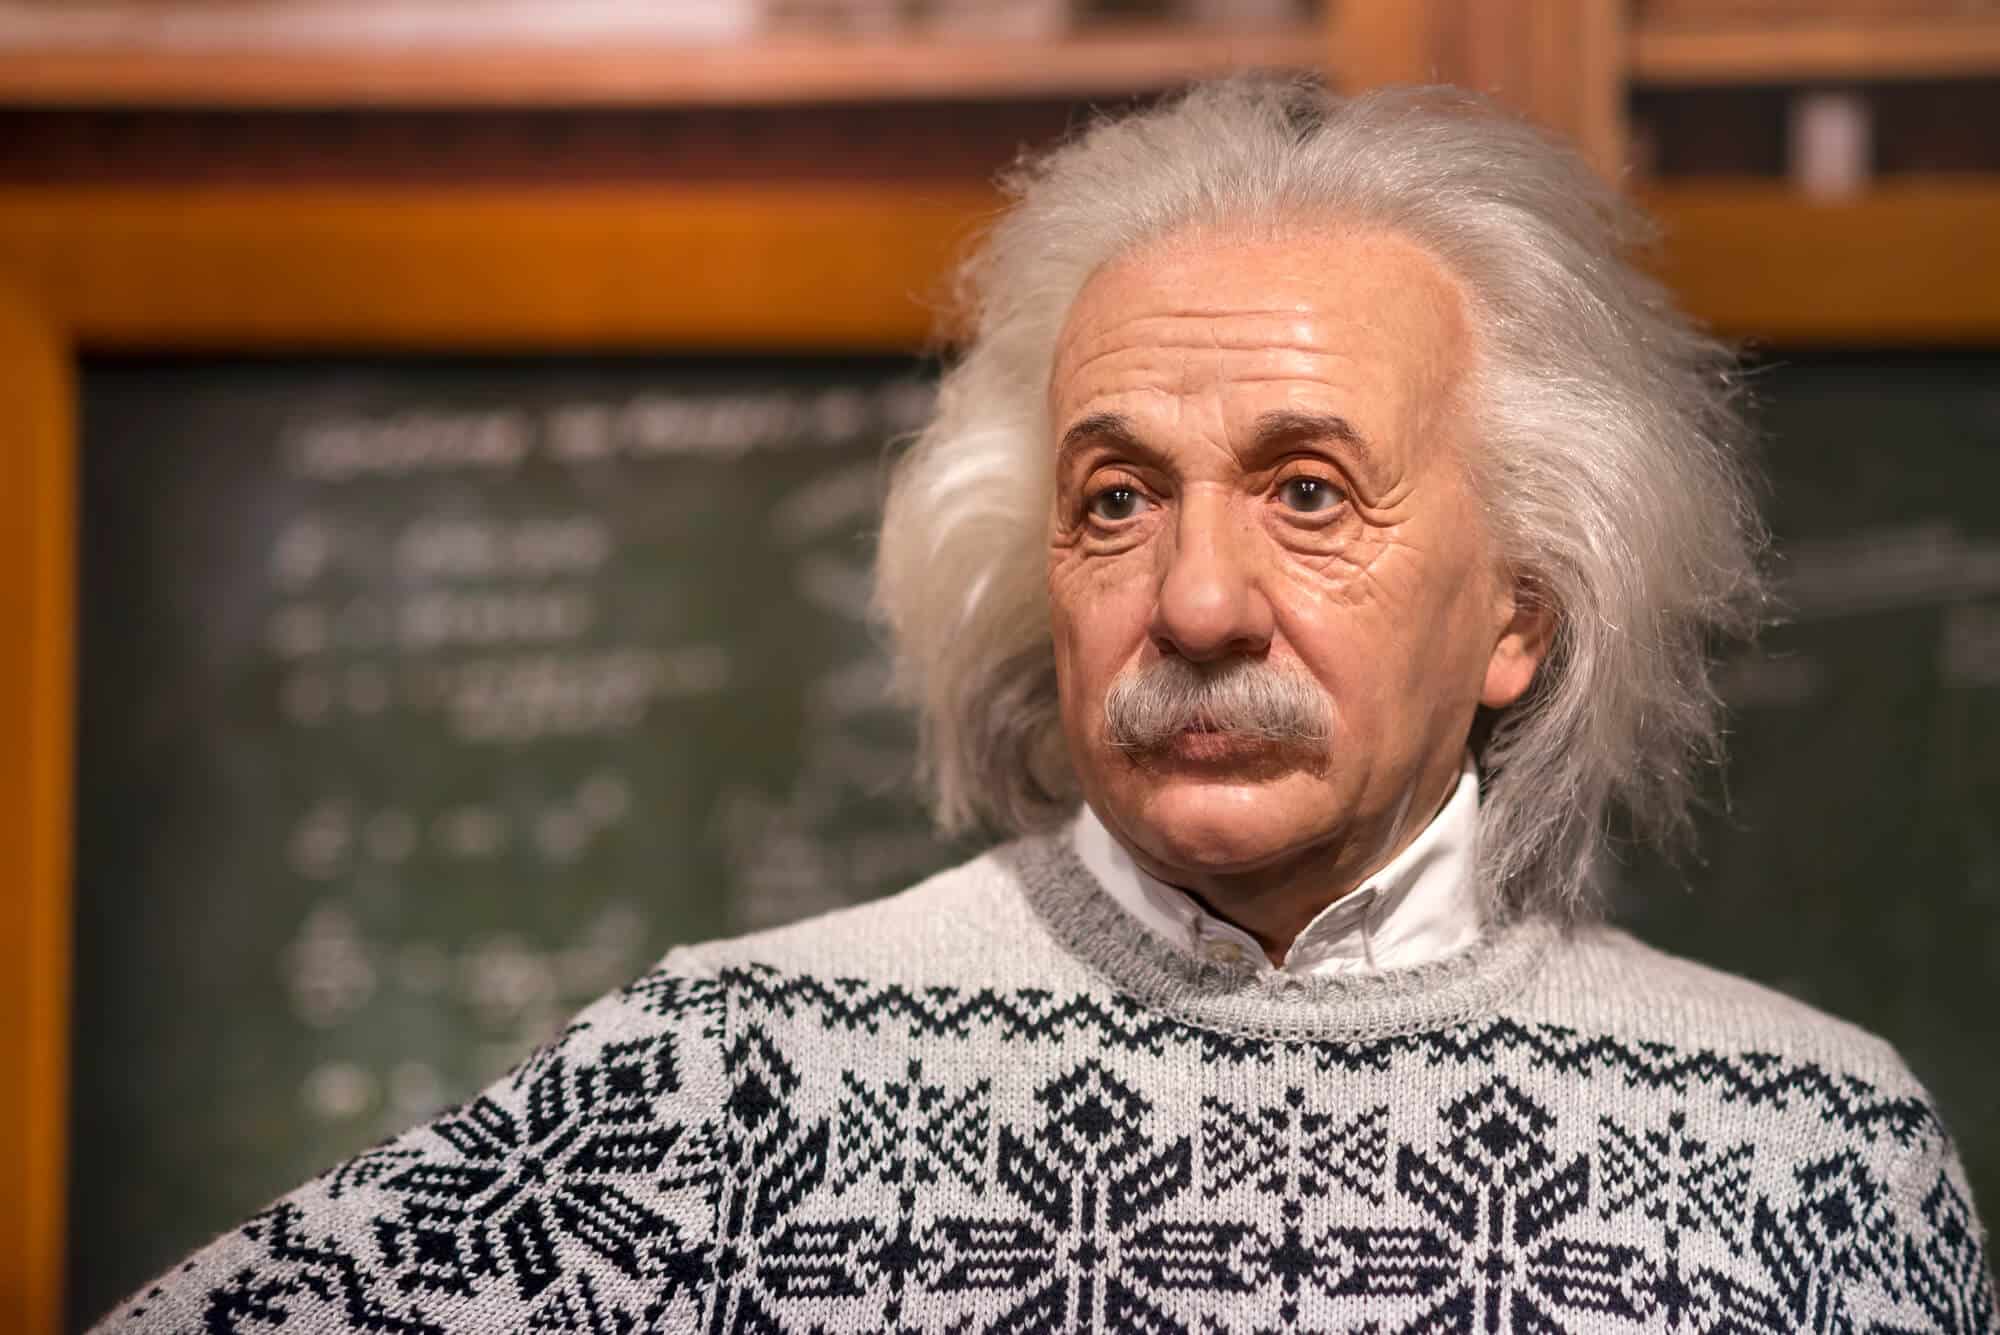 אלברט איינשטיין מדען ופילוסוף האיש ששינה לנצח את תפיסת המרחב והזמן